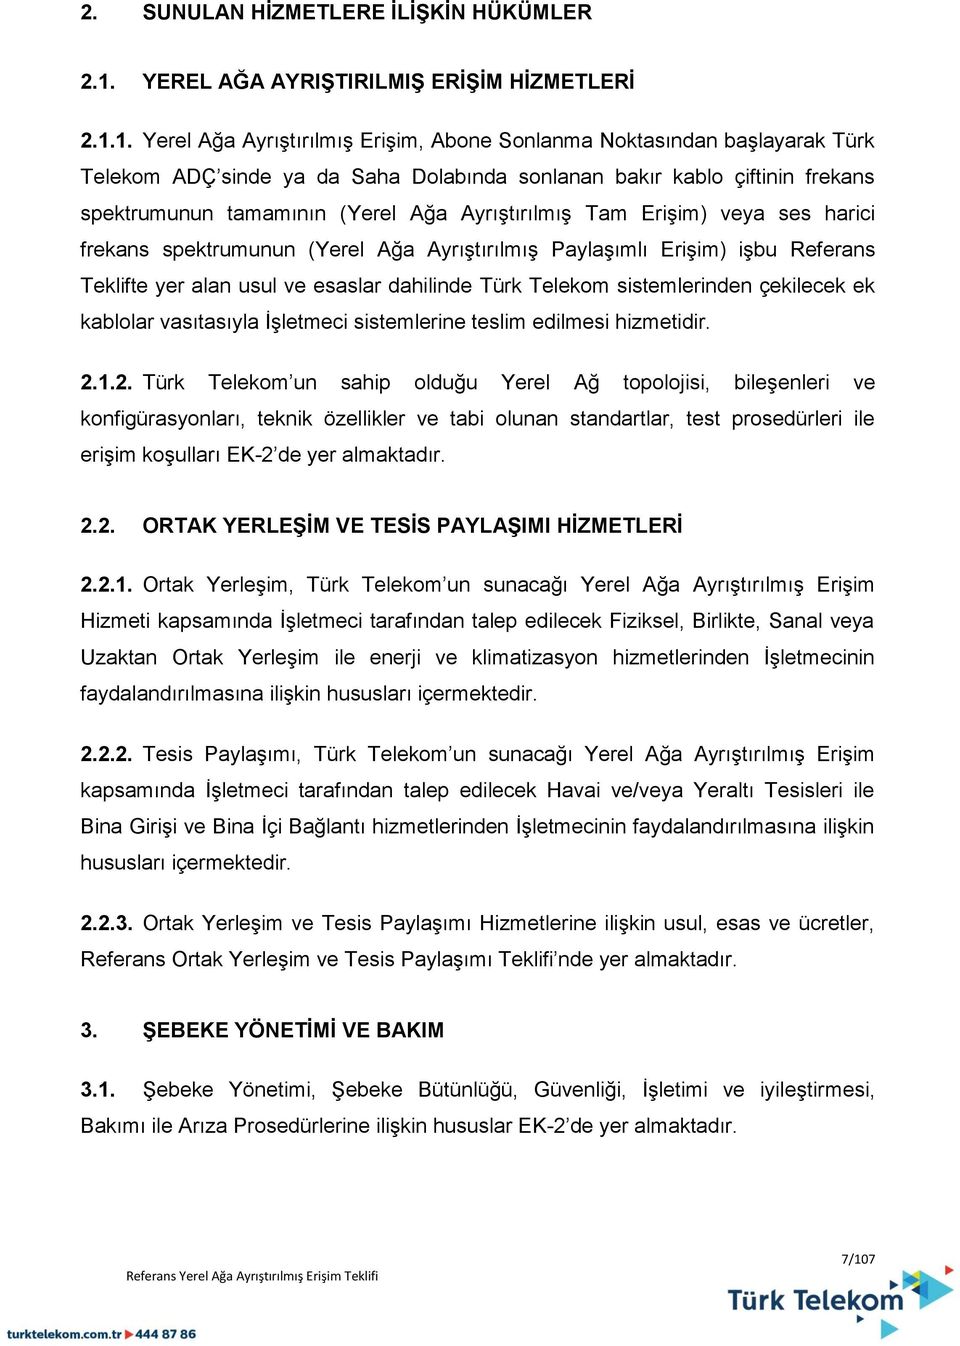 1. Yerel Ağa Ayrıştırılmış Erişim, Abone Sonlanma Noktasından başlayarak Türk Telekom ADÇ sinde ya da Saha Dolabında sonlanan bakır kablo çiftinin frekans spektrumunun tamamının (Yerel Ağa